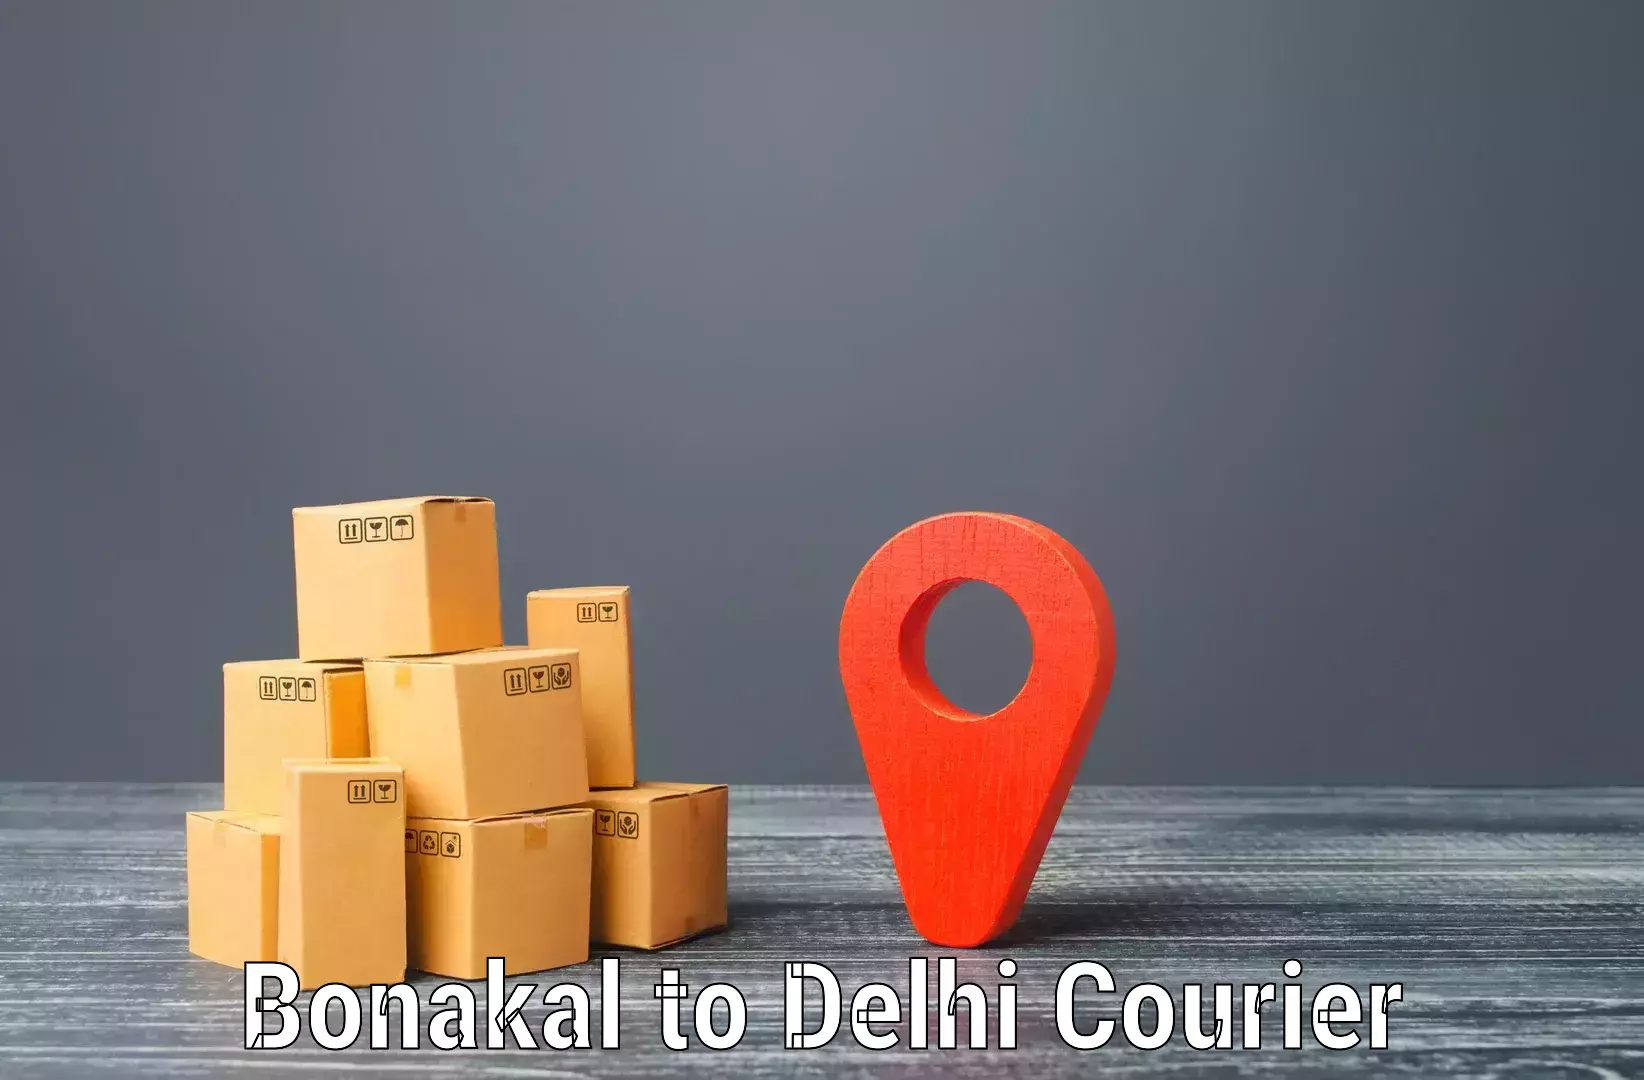 Courier service partnerships Bonakal to Jamia Hamdard New Delhi